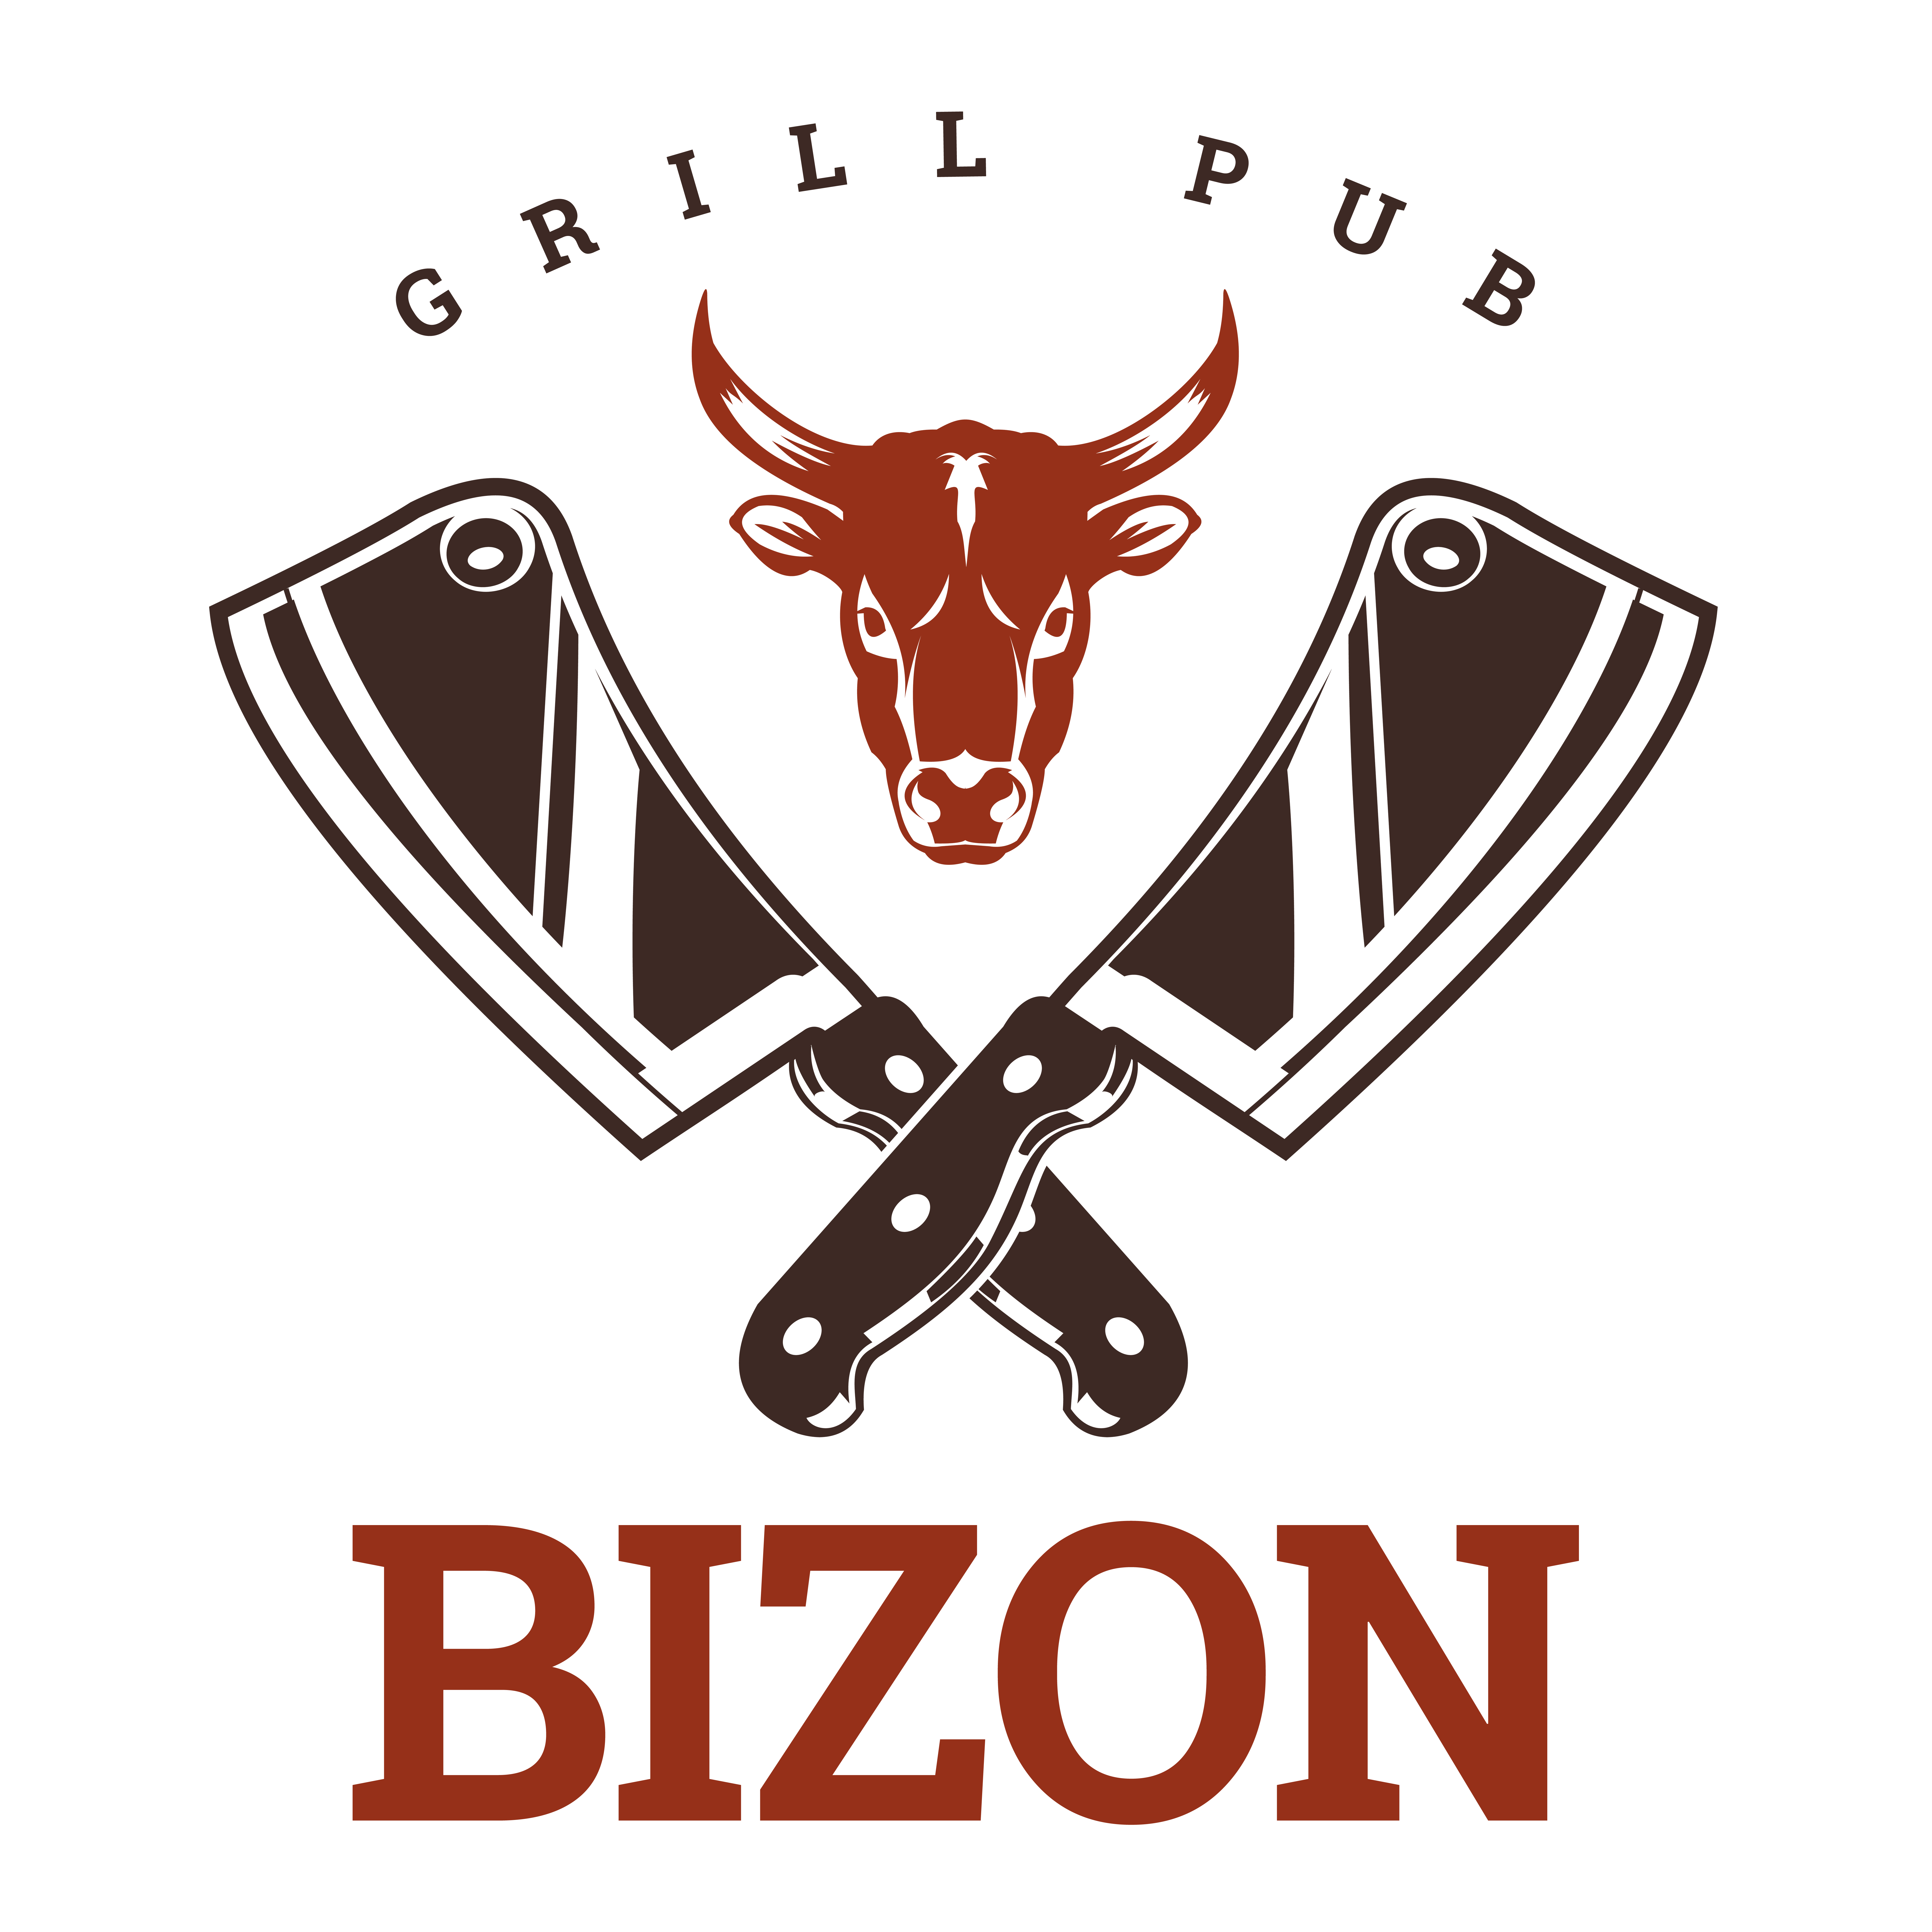 Ресторан и гриль бар "BIZON"